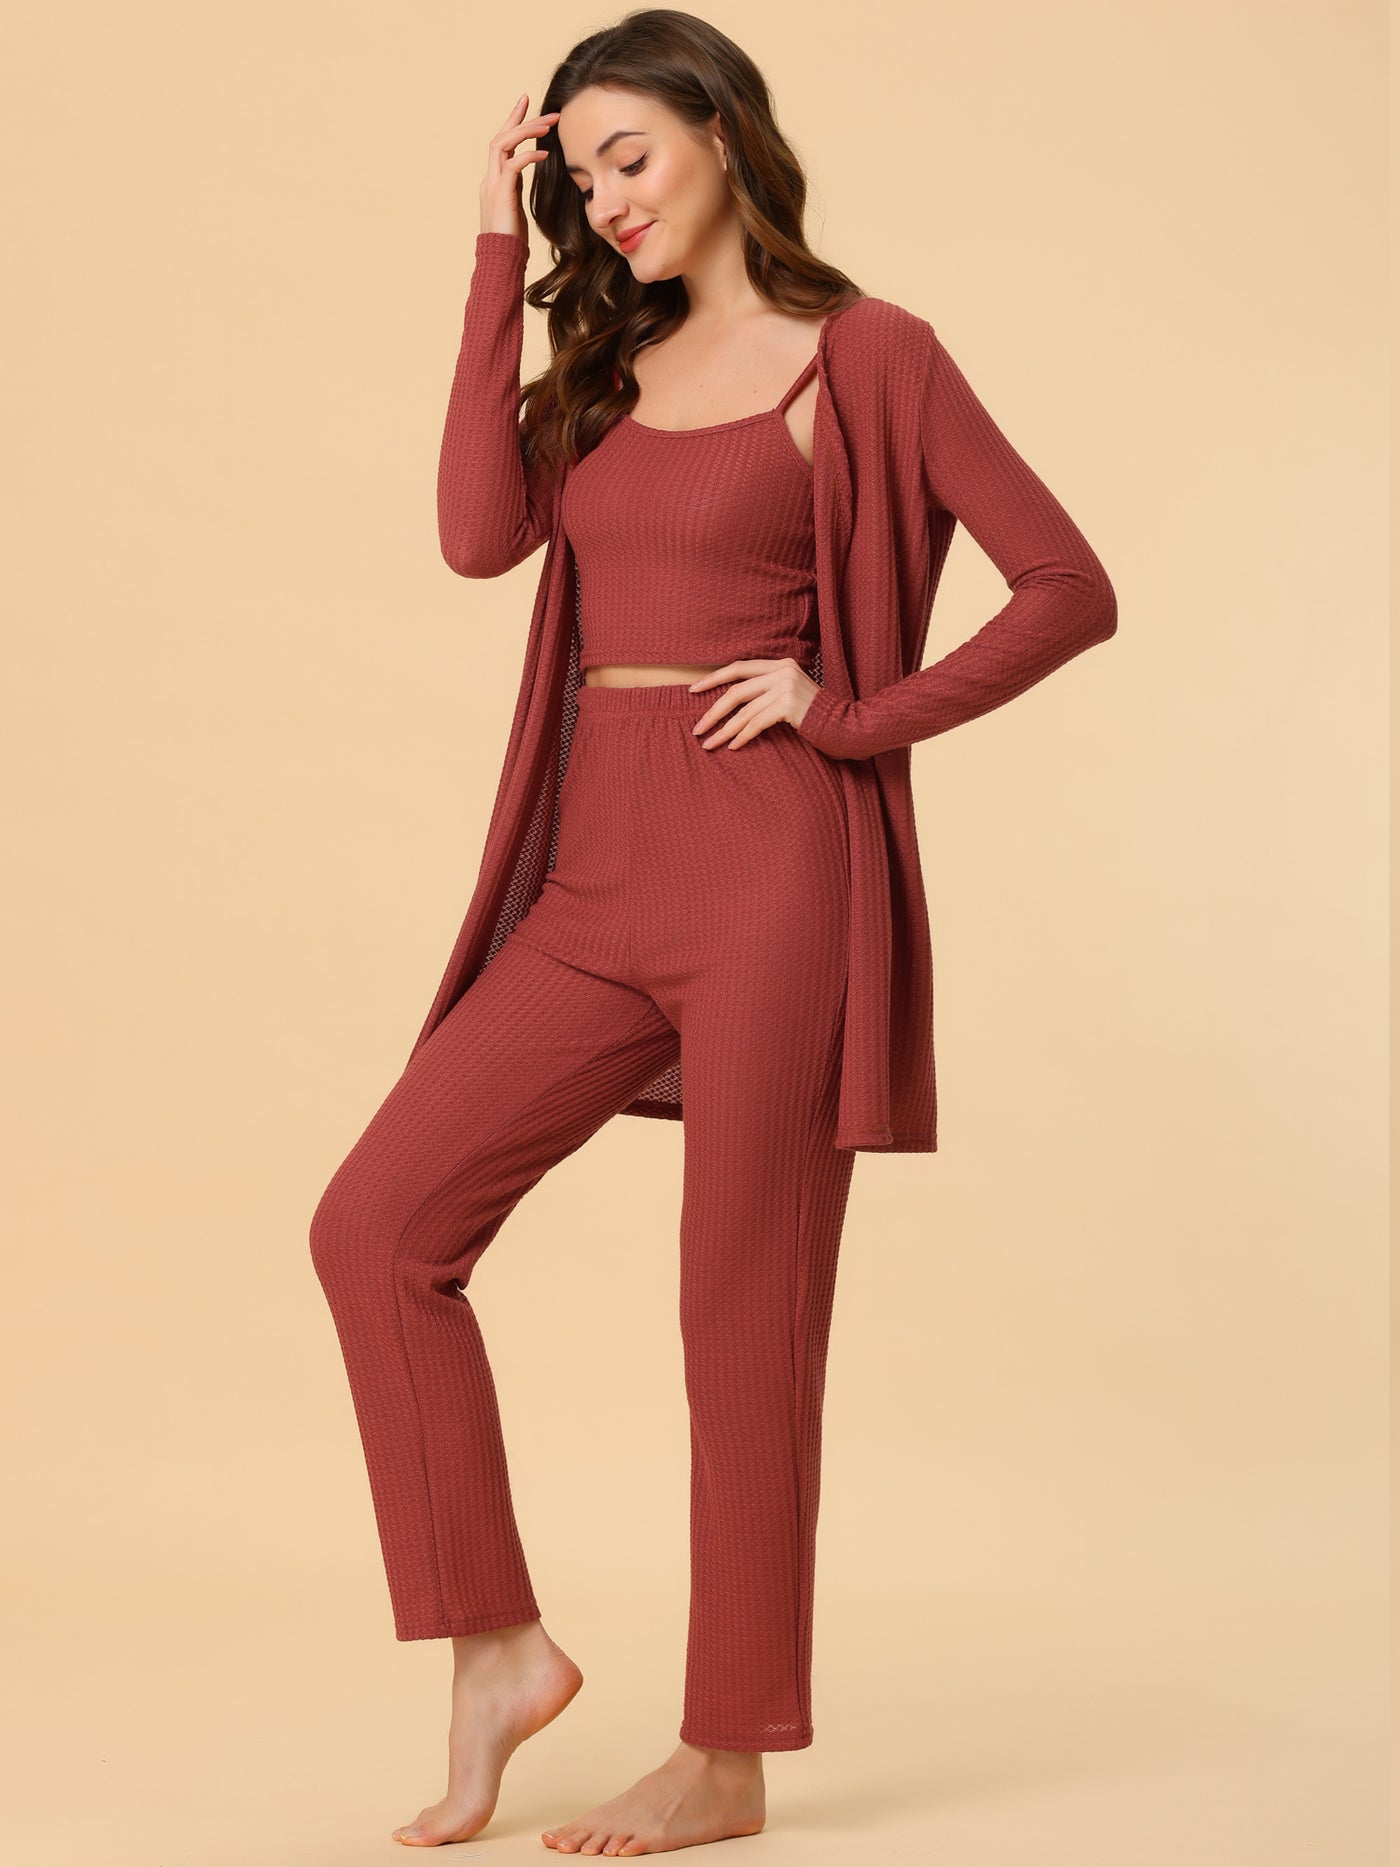 Bublédon Women's 3pcs Knit Lounge Sleepwear Pajama Sets